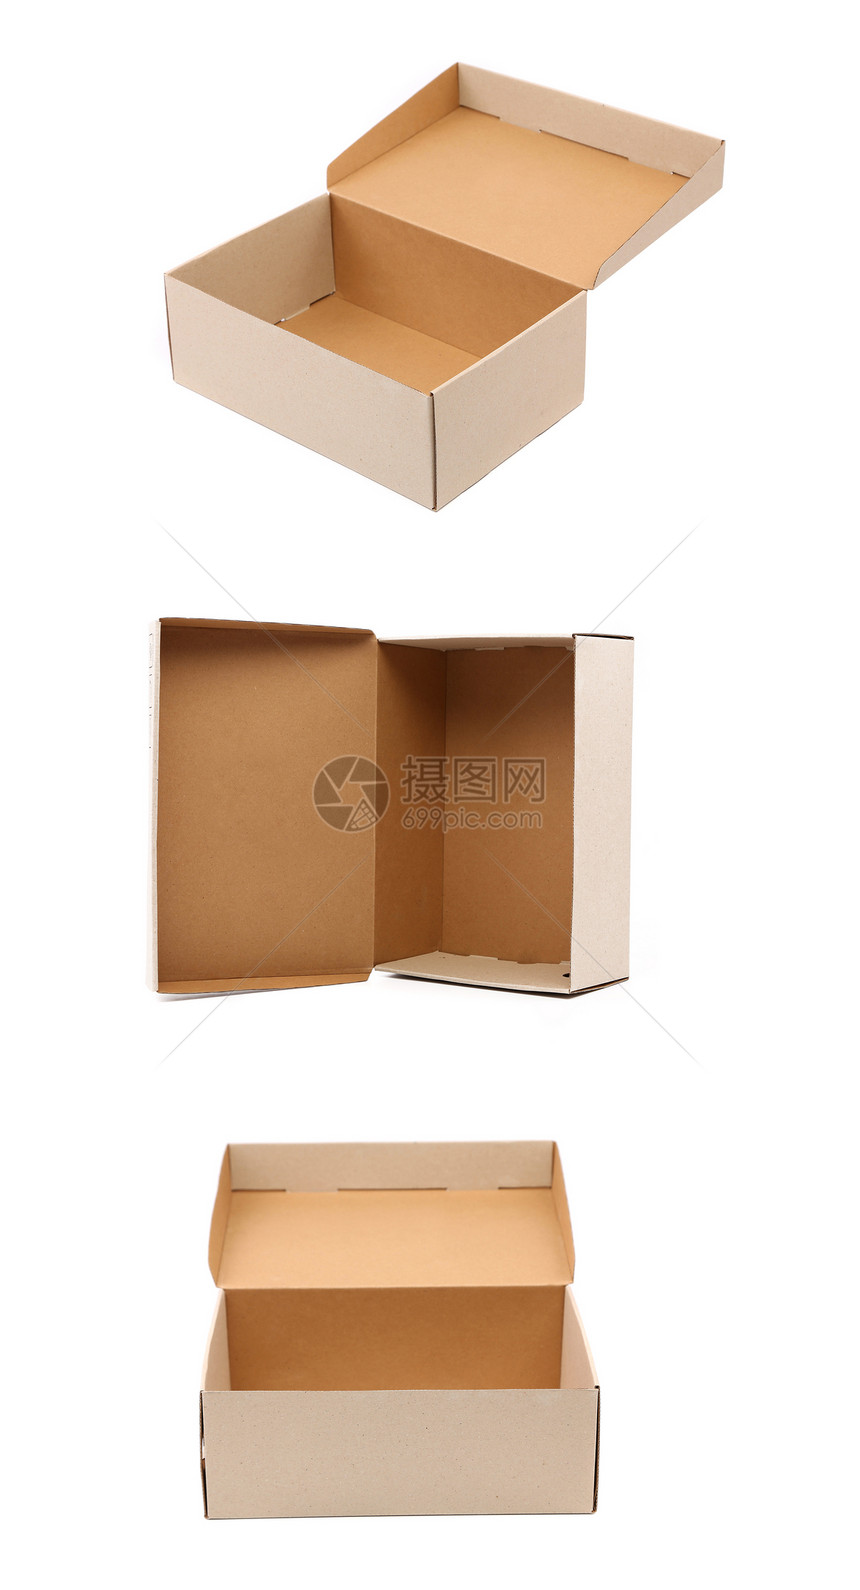 包装箱的拼凑运输礼物展示存储货运包装命令惊喜商品贮存图片